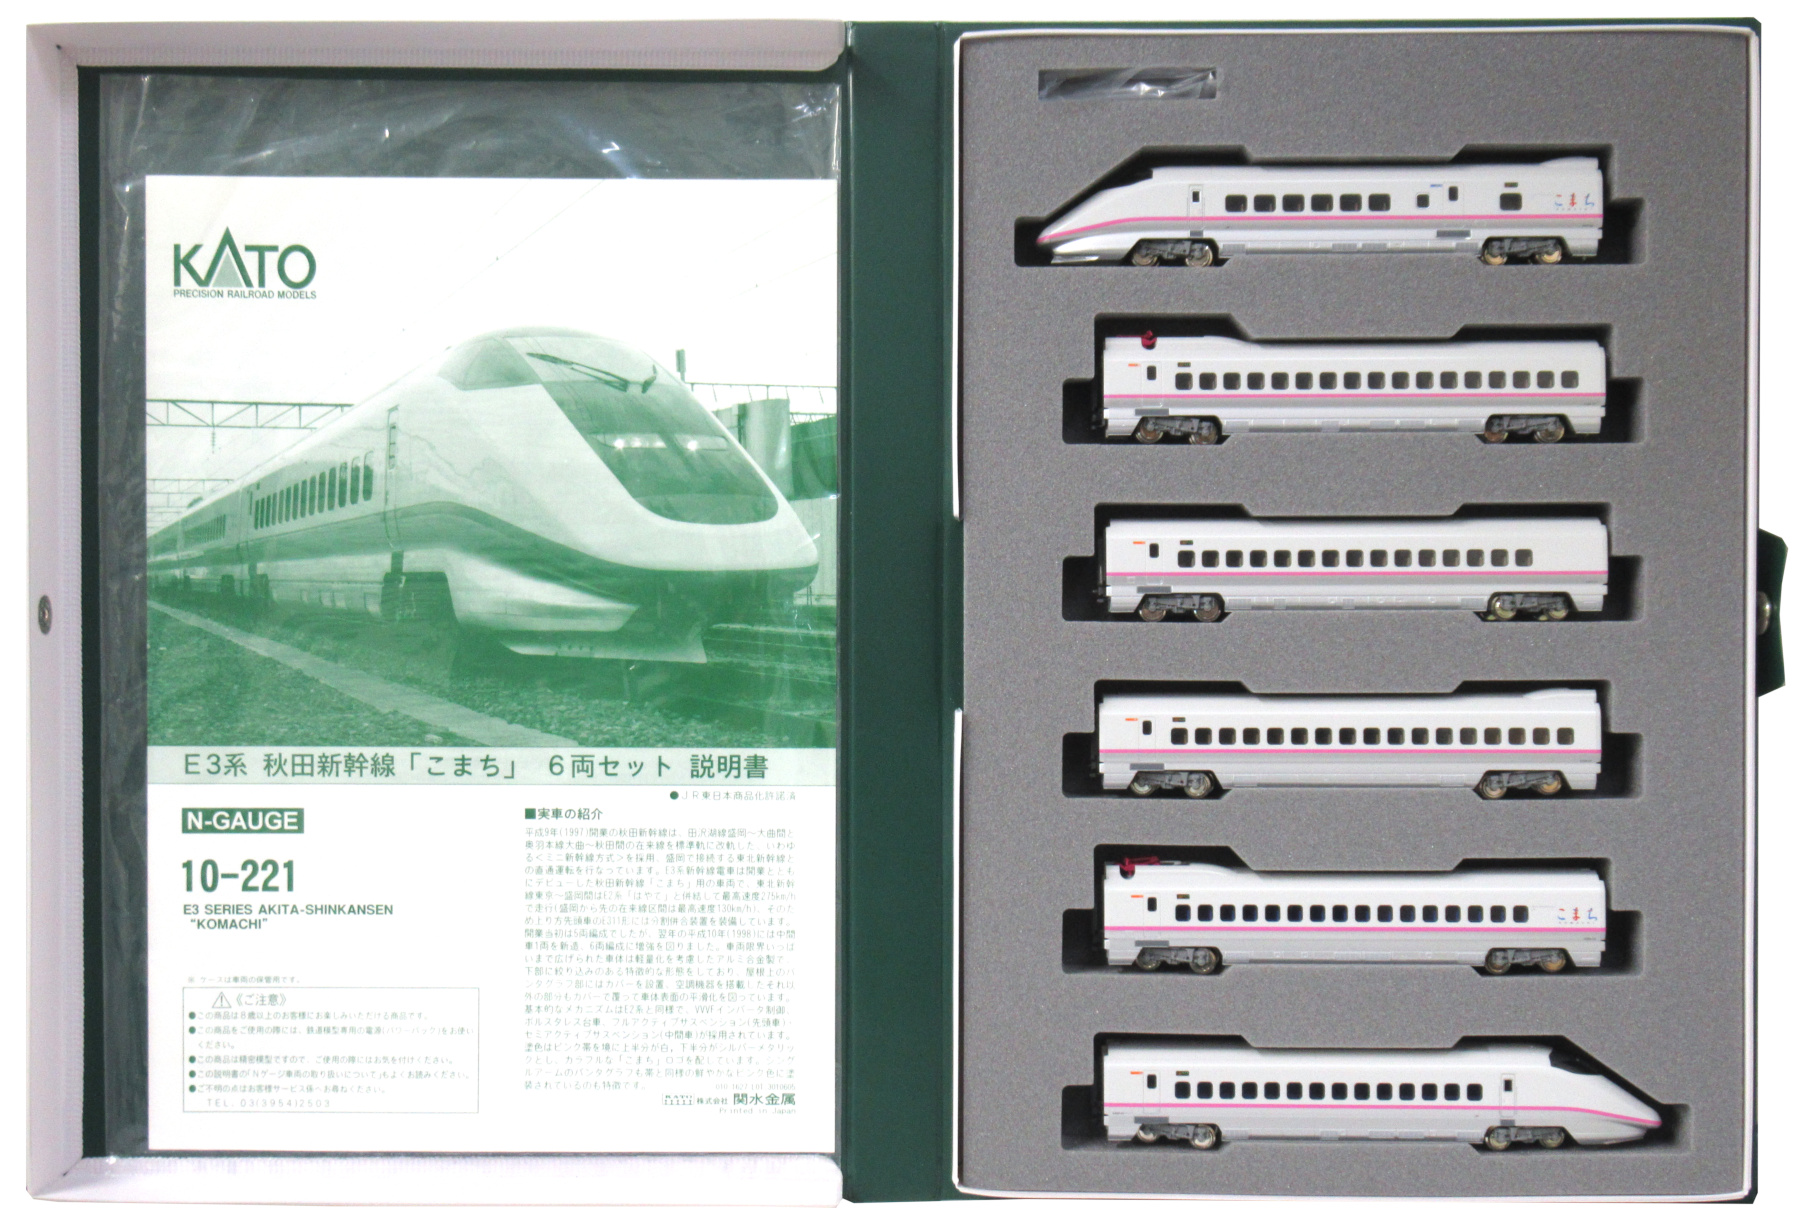 公式]鉄道模型(10-221E3系 秋田新幹線「こまち」6両セット)商品詳細 ...